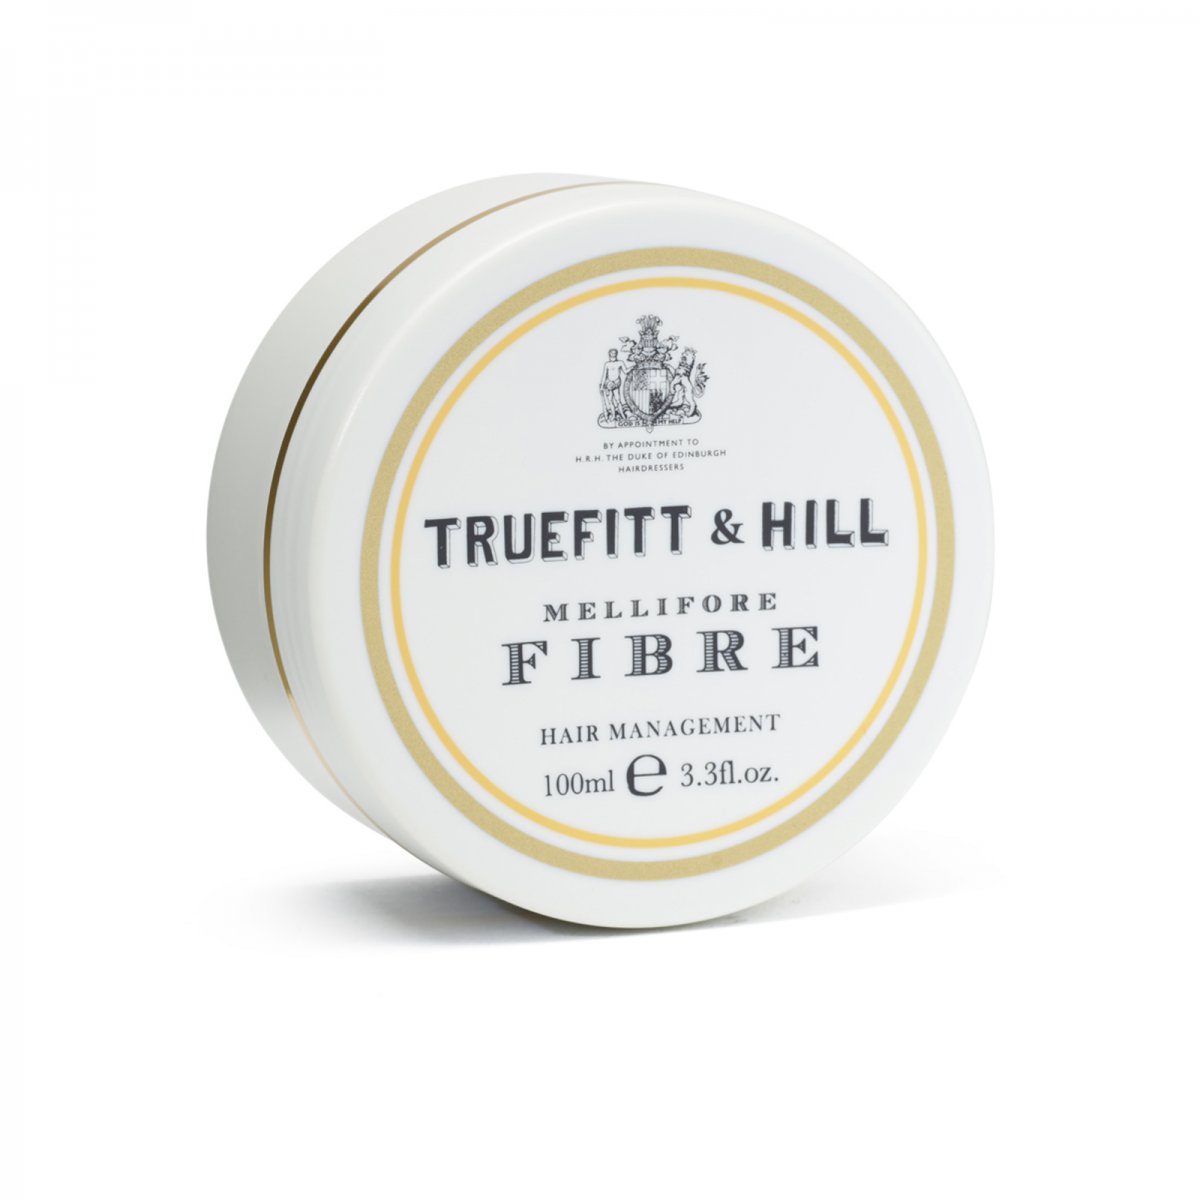 Truefitt & Hill Hair Management Mellifore Fibre 100 ml von Truefitt & Hill